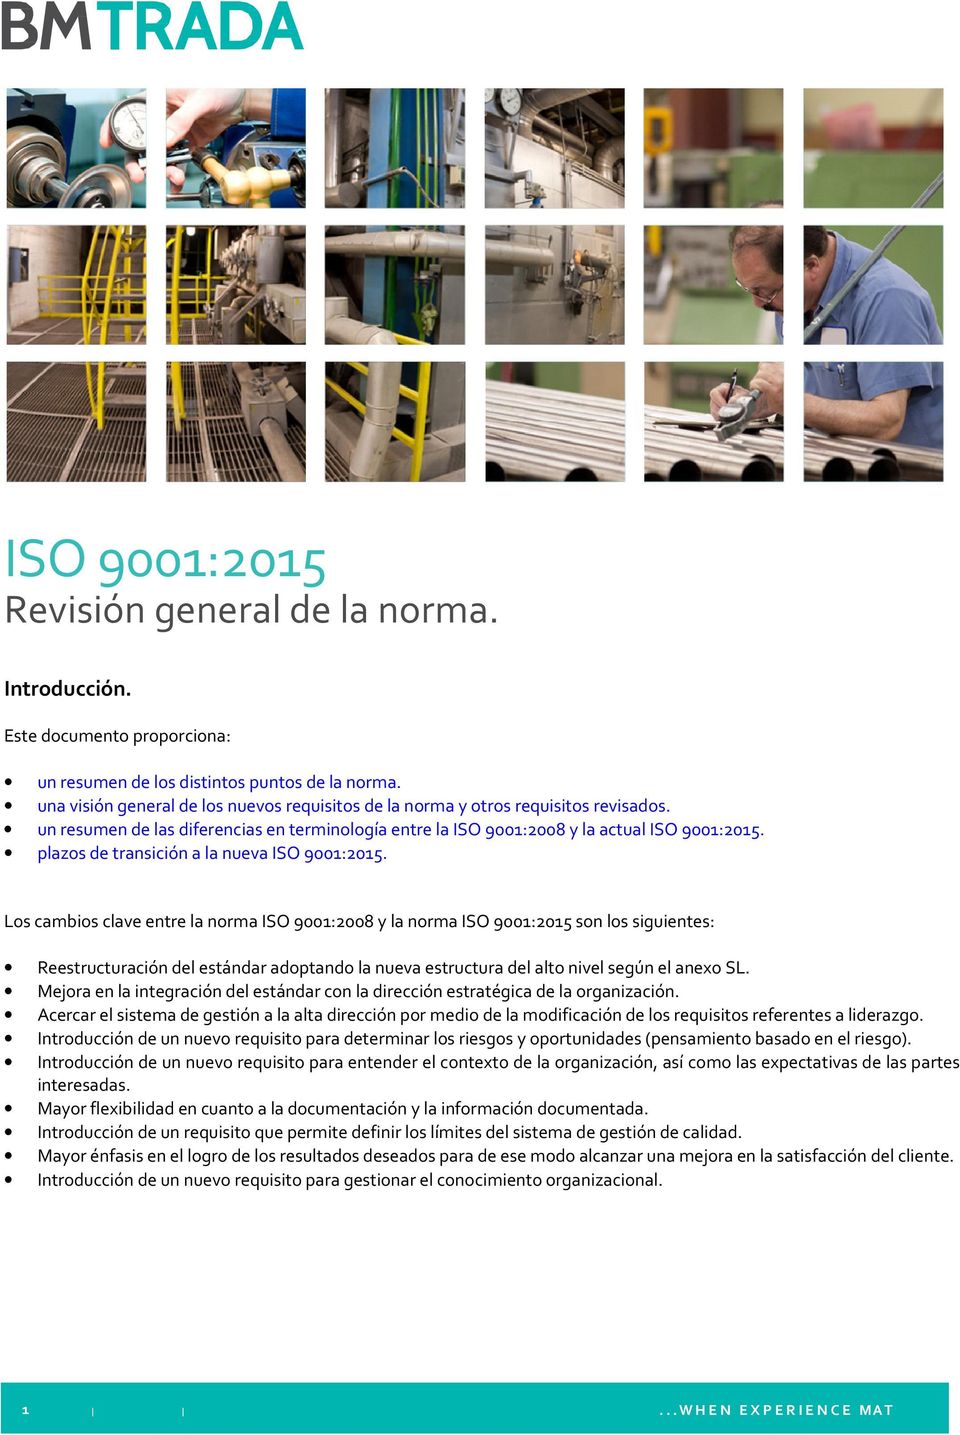 plazos de transición a la nueva ISO 9001:2015.